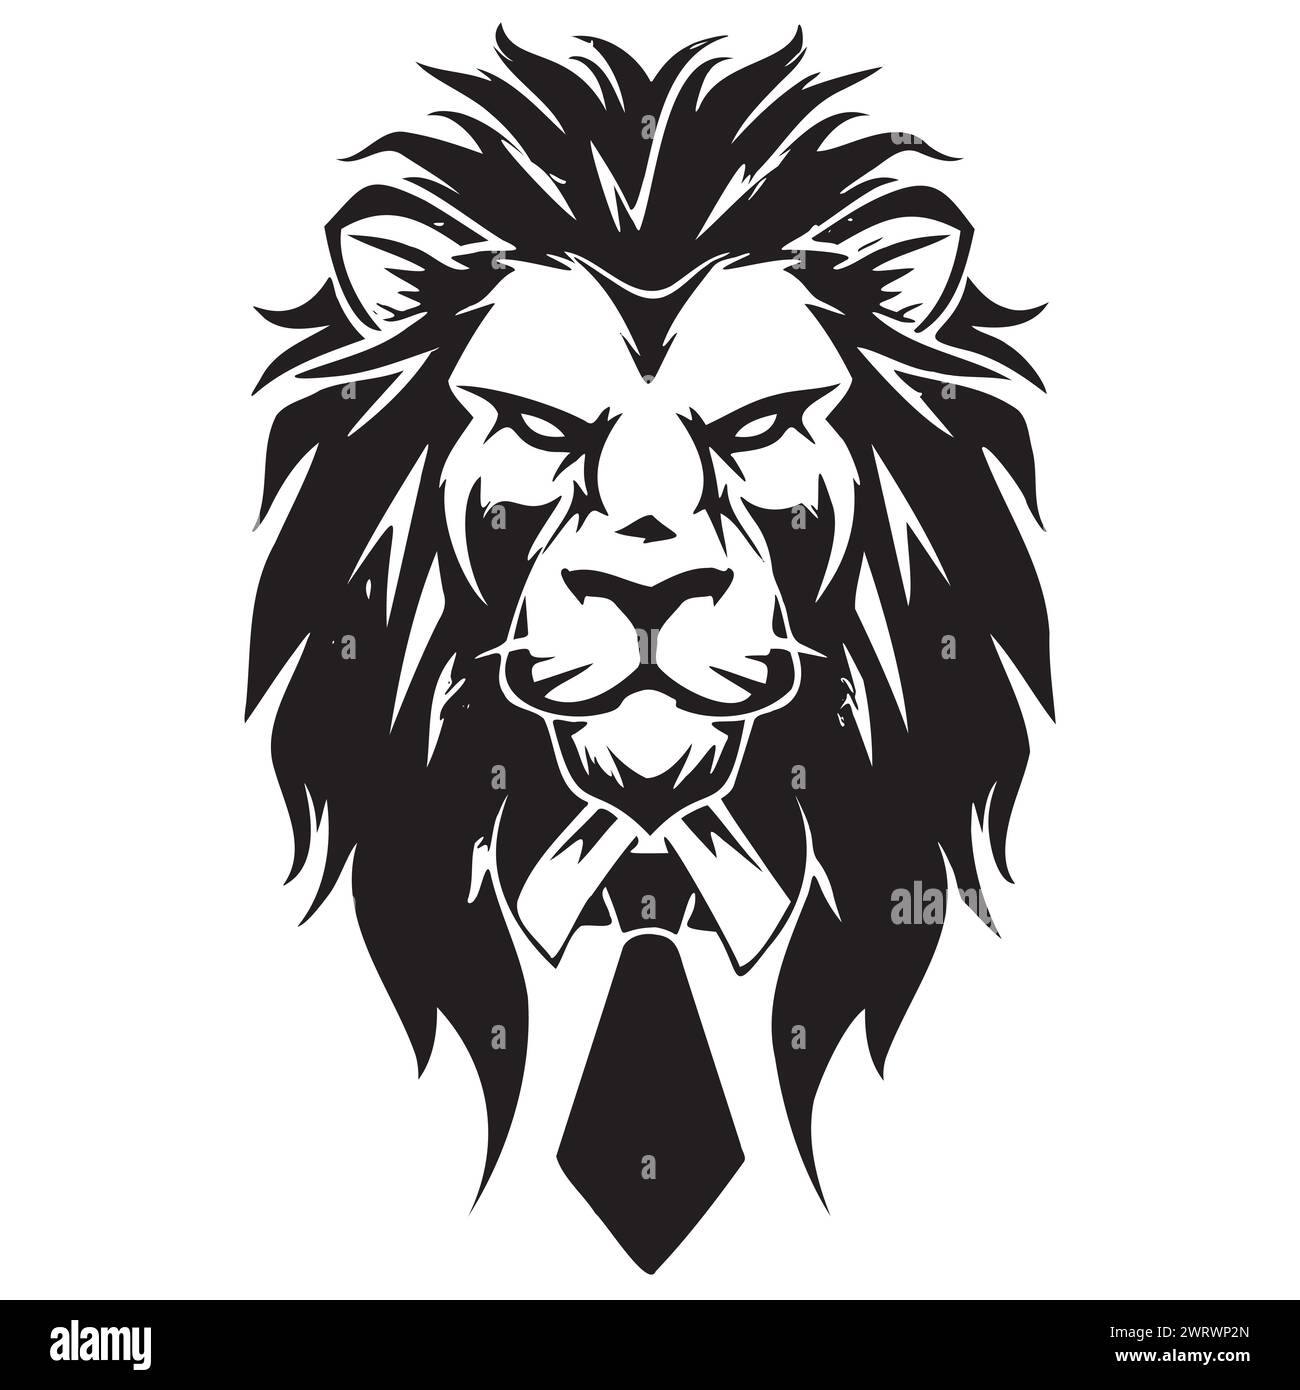 Schwarz-weiße Zeichnung eines Löwen im Anzug Stock Vektor